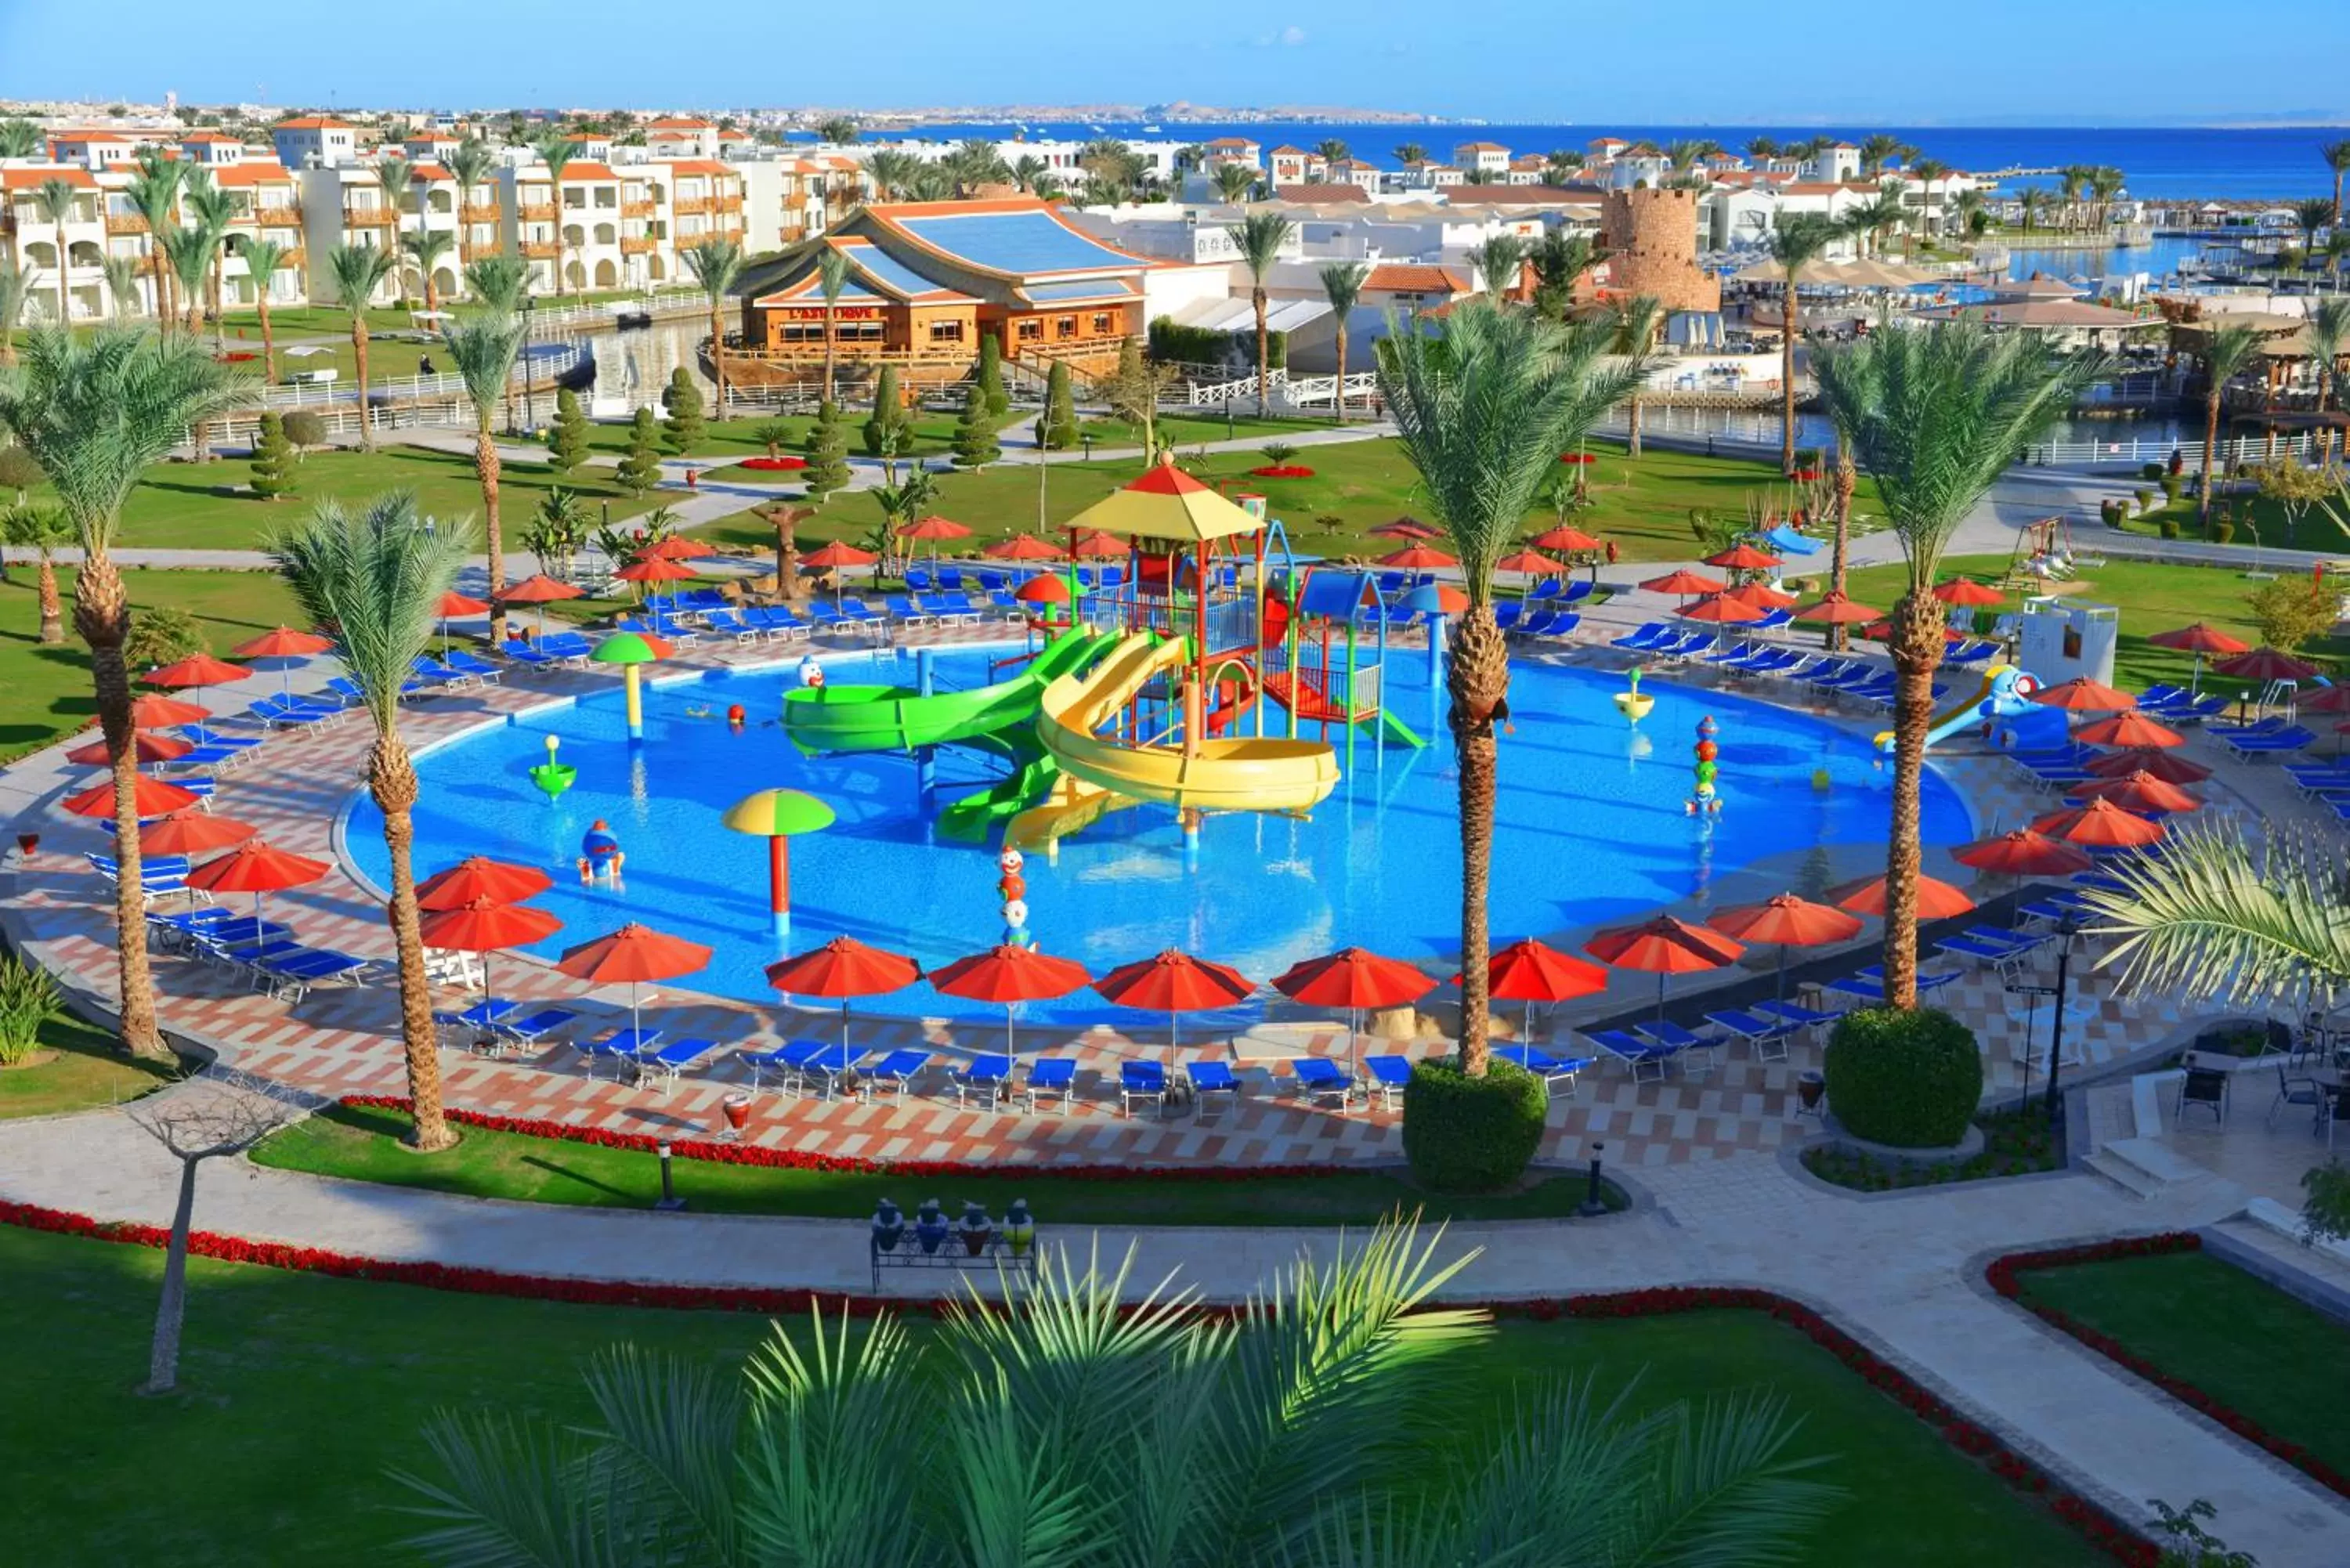 Swimming pool, Pool View in Pickalbatros Dana Beach Resort - Hurghada